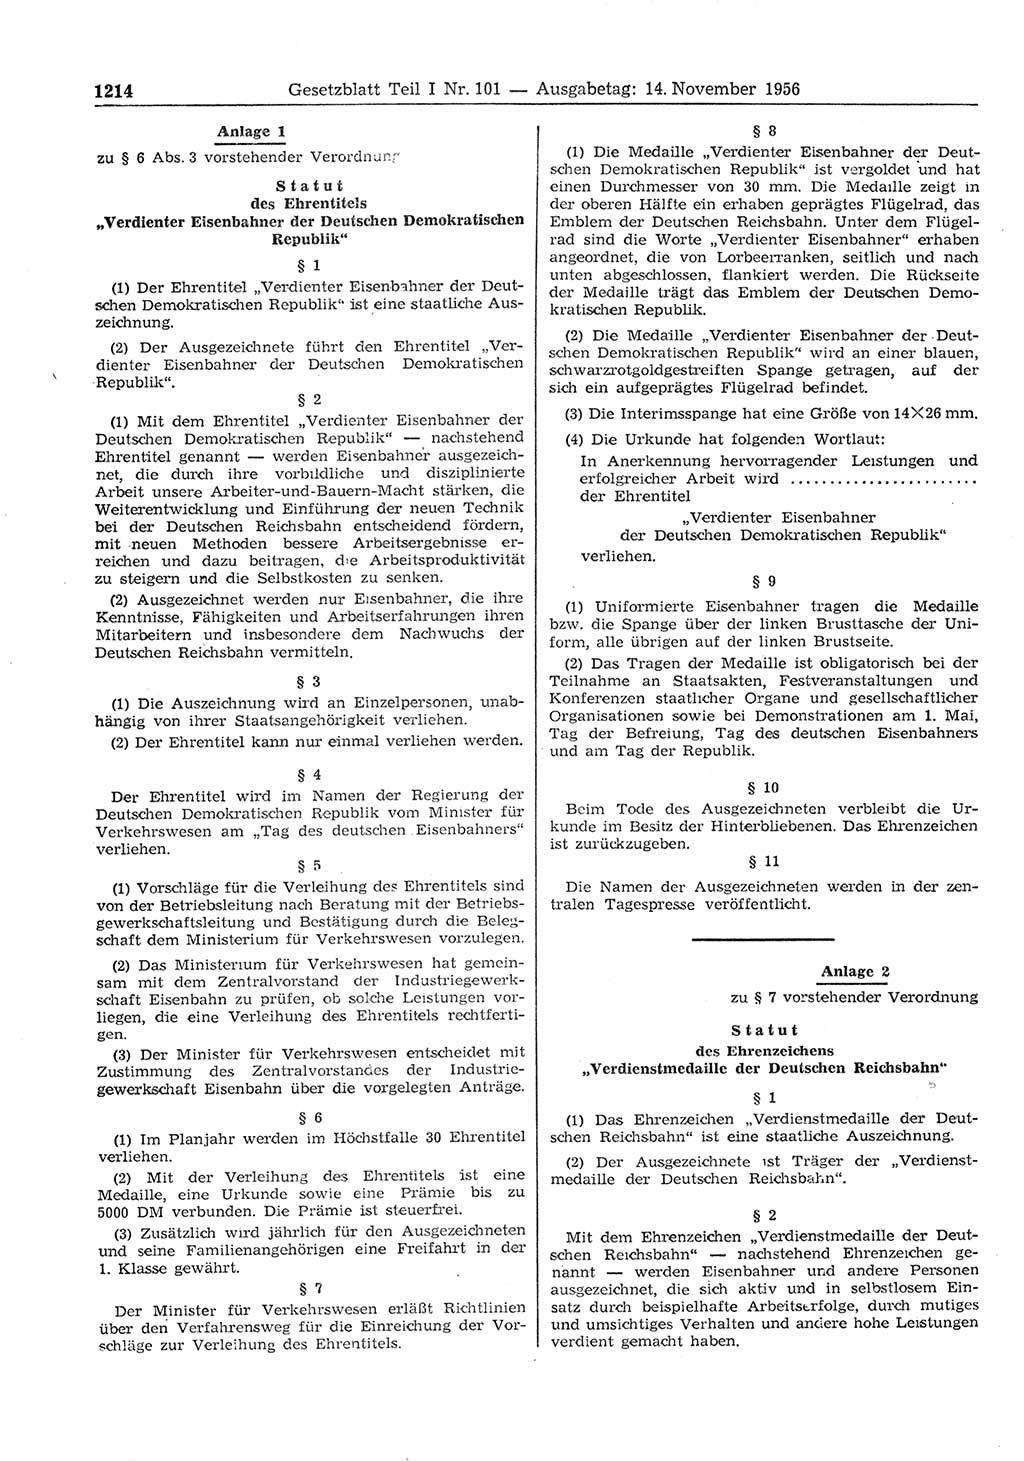 Gesetzblatt (GBl.) der Deutschen Demokratischen Republik (DDR) Teil Ⅰ 1956, Seite 1214 (GBl. DDR Ⅰ 1956, S. 1214)